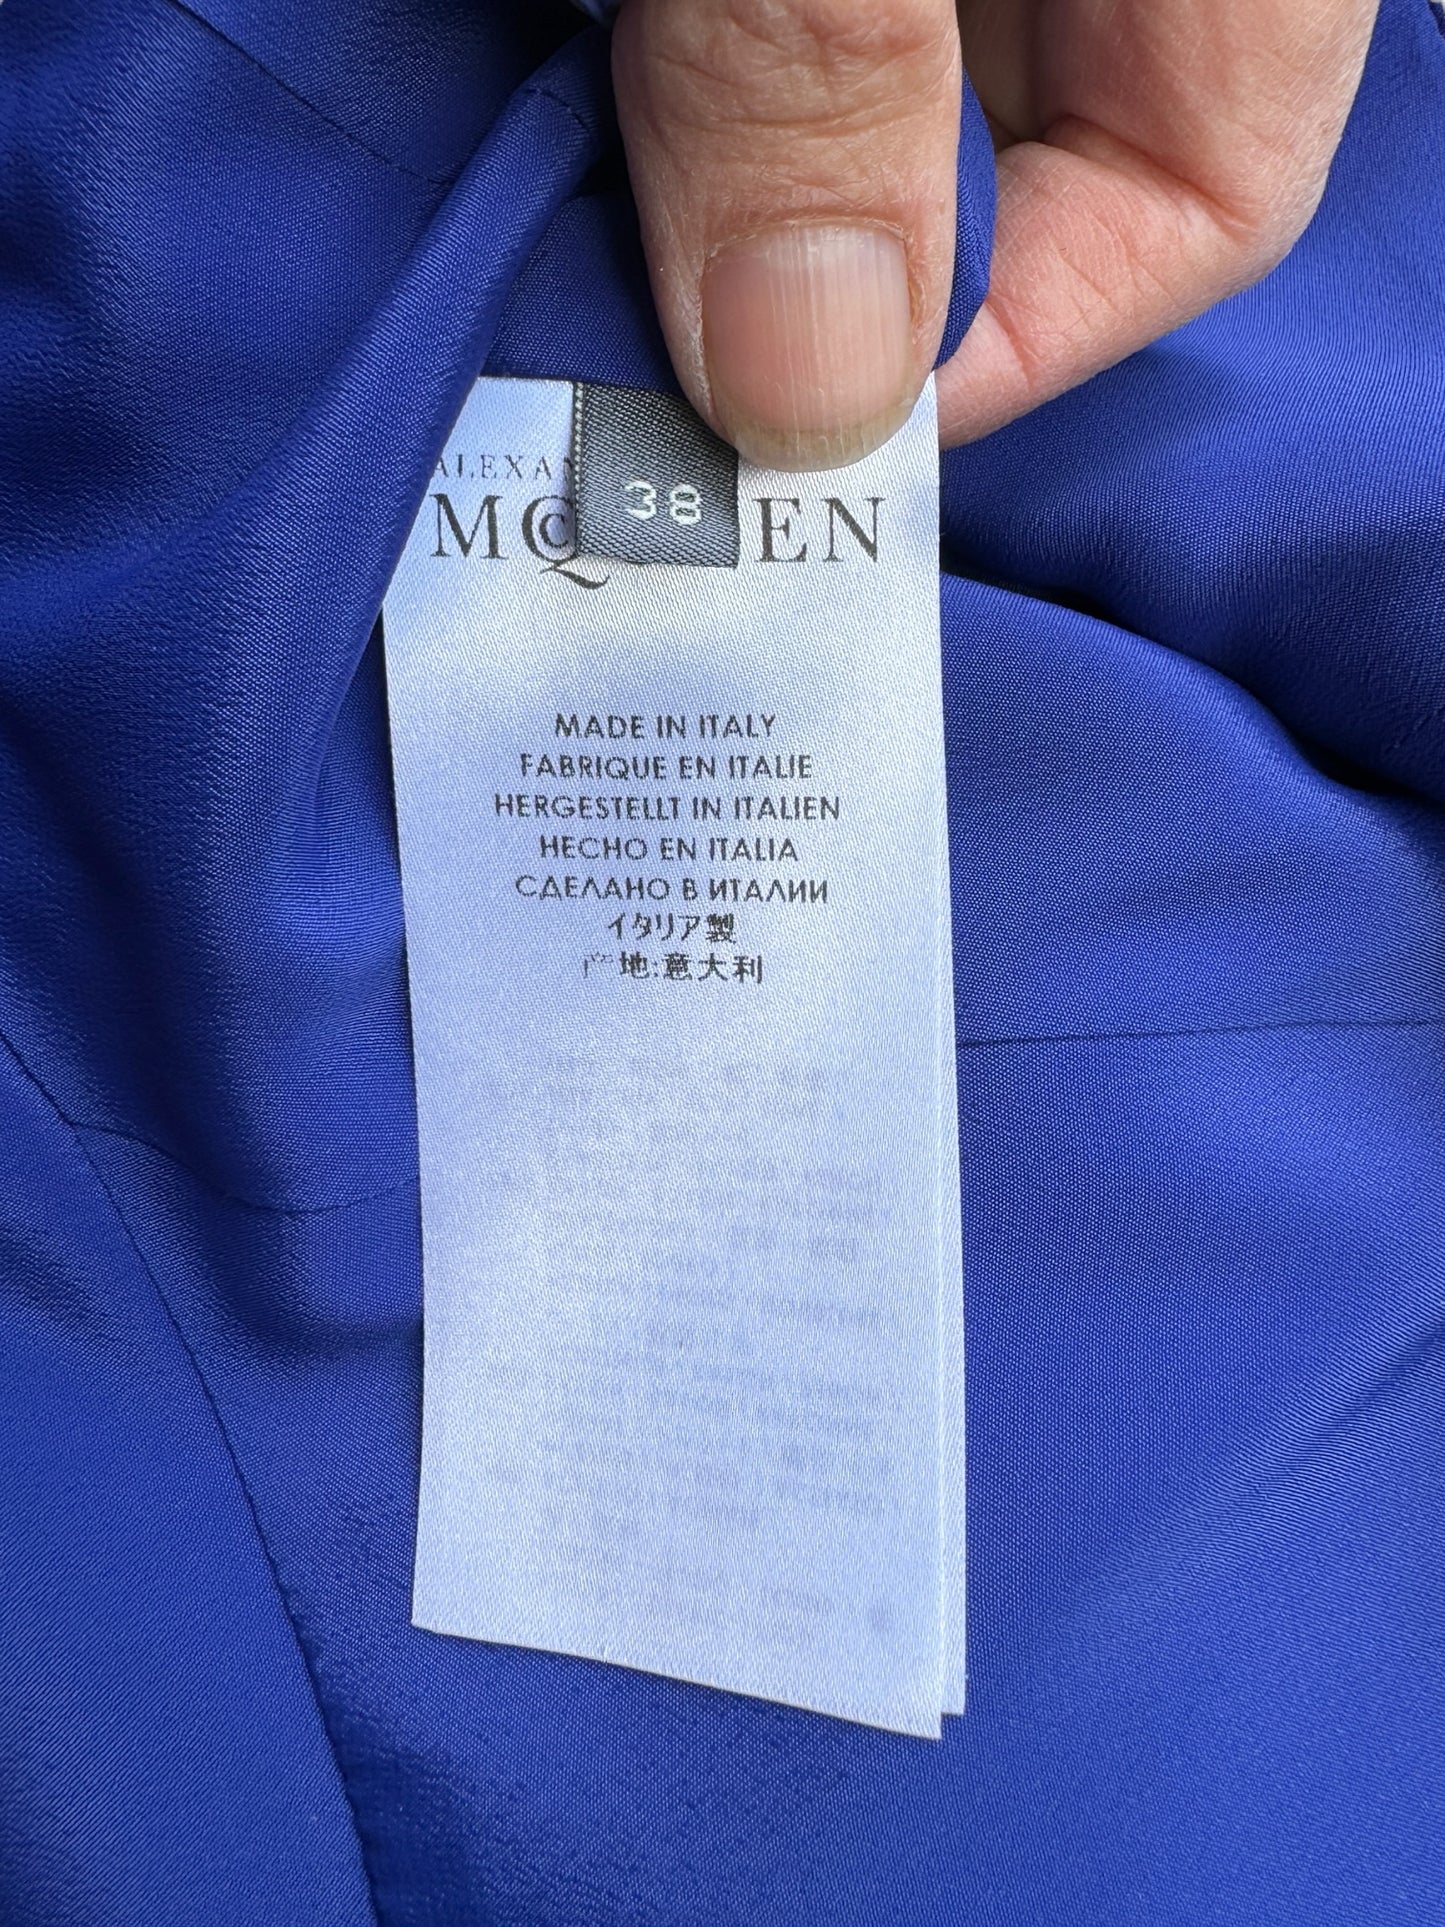 Alexander McQueen Size 6/8 Royal Blue Dress